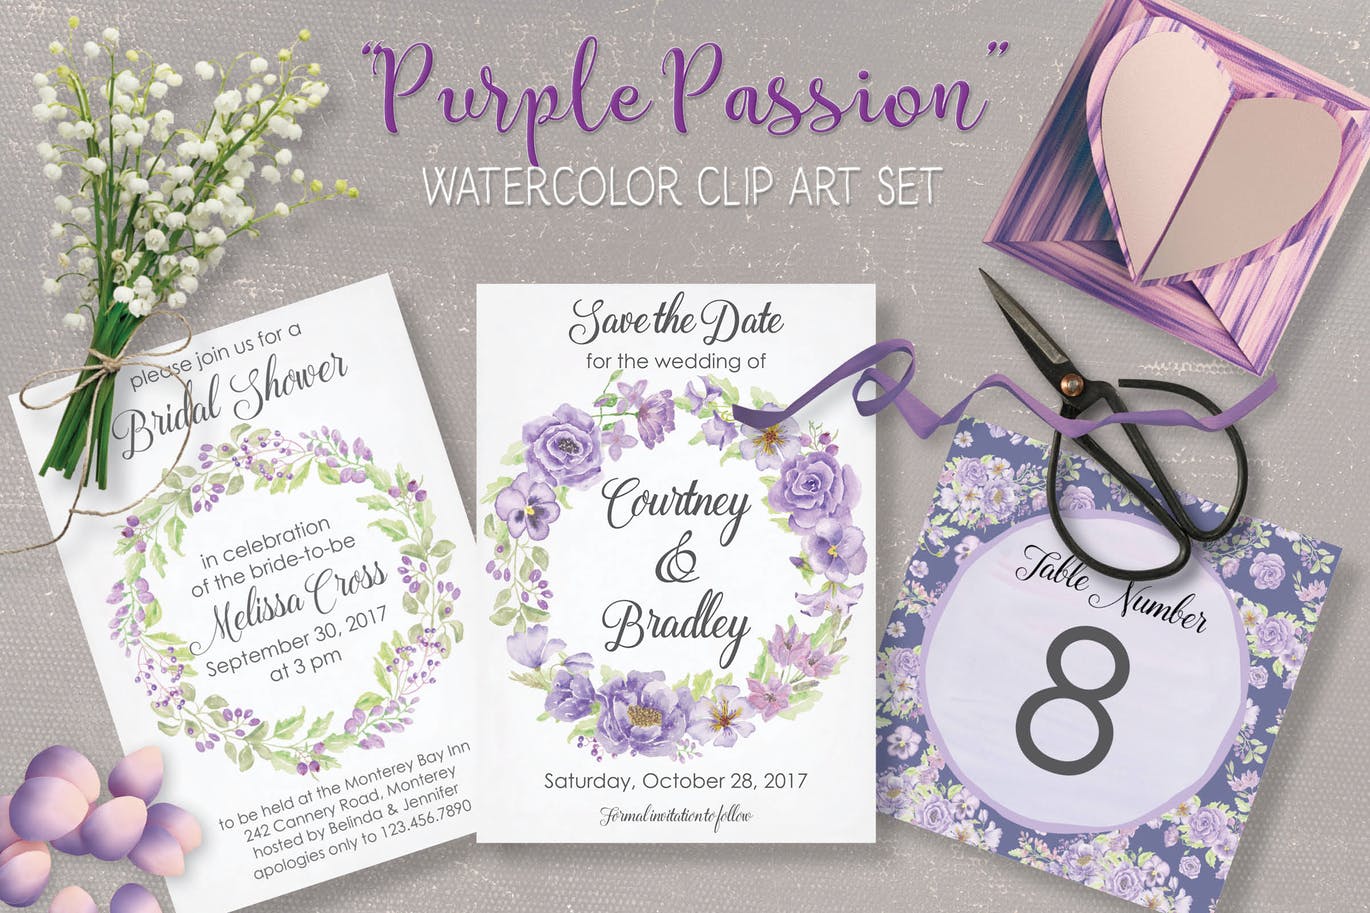 紫色水彩手绘花卉图案剪贴画PNG素材套装 Purple Passion: Watercolor Clip Art Bundle插图